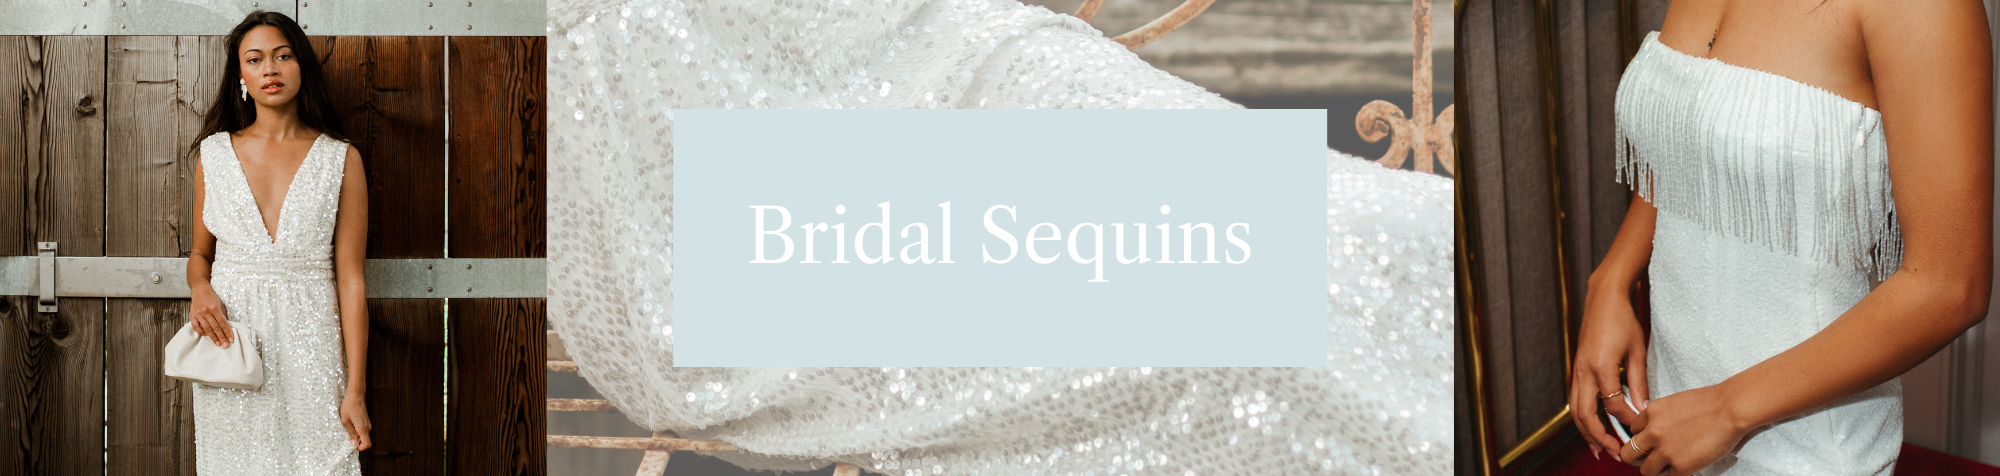 Bridal Sequins